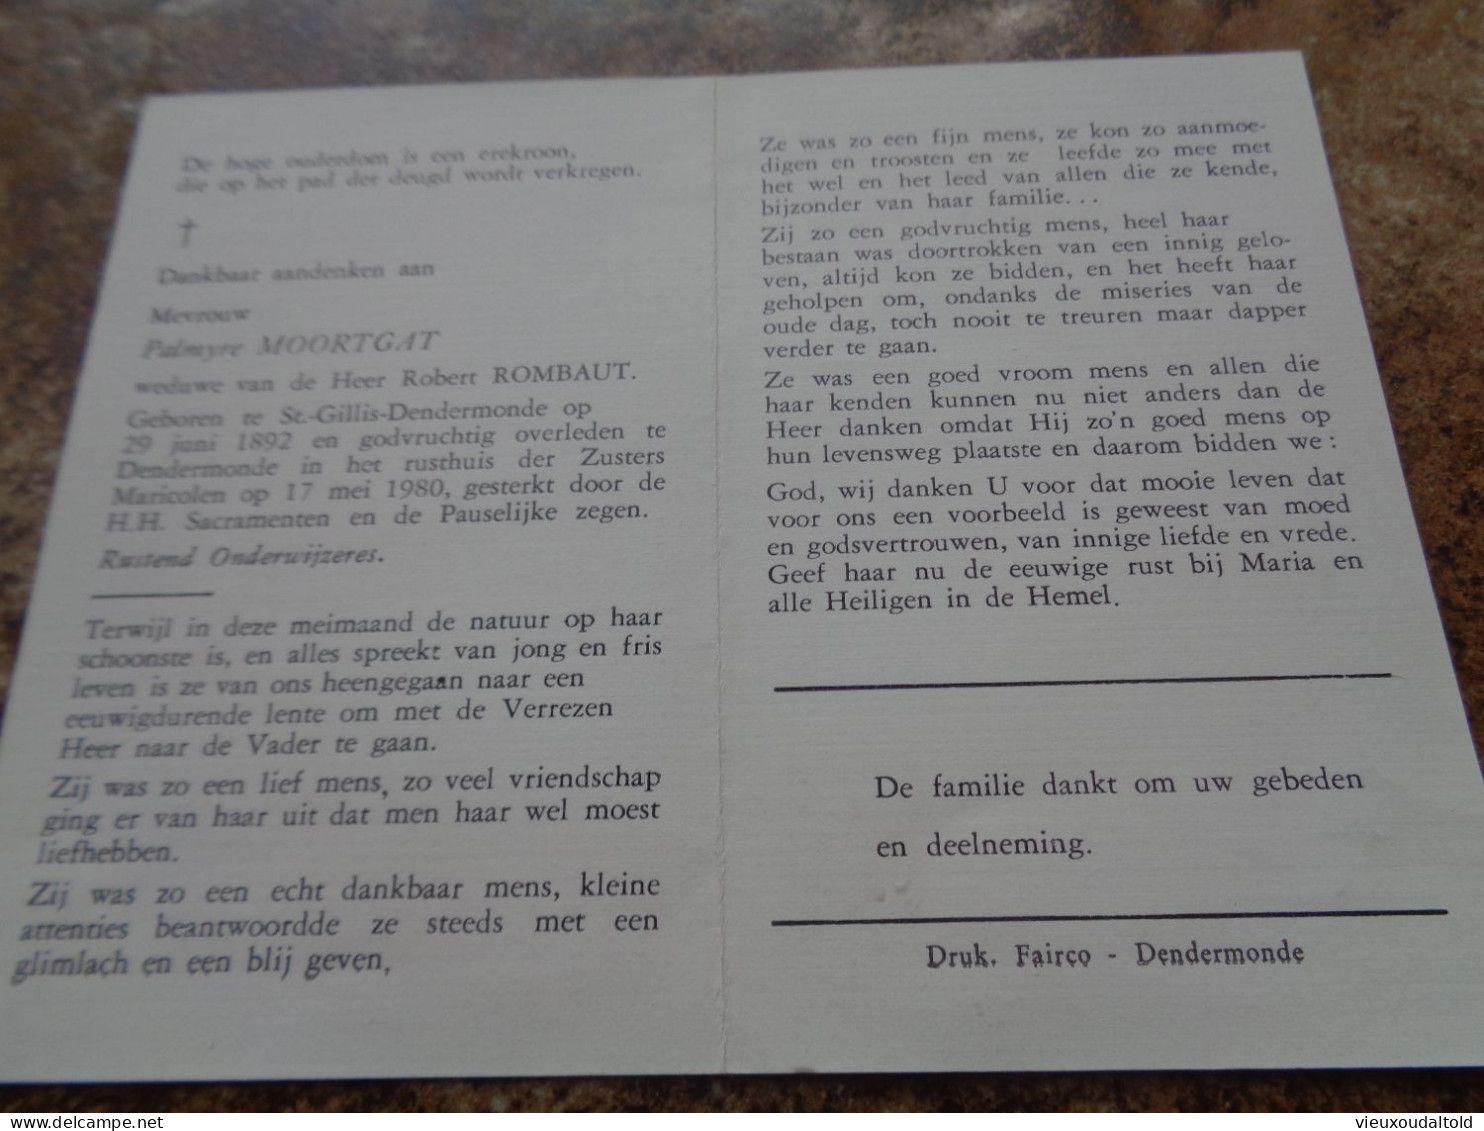 Doodsprentje/Bidprentje  Palmyre MOORTGAT   St Gillis-Dendermonde 1892-1980 Dendermonde  (Wwe Rogert ROMBAUT) - Religion &  Esoterik